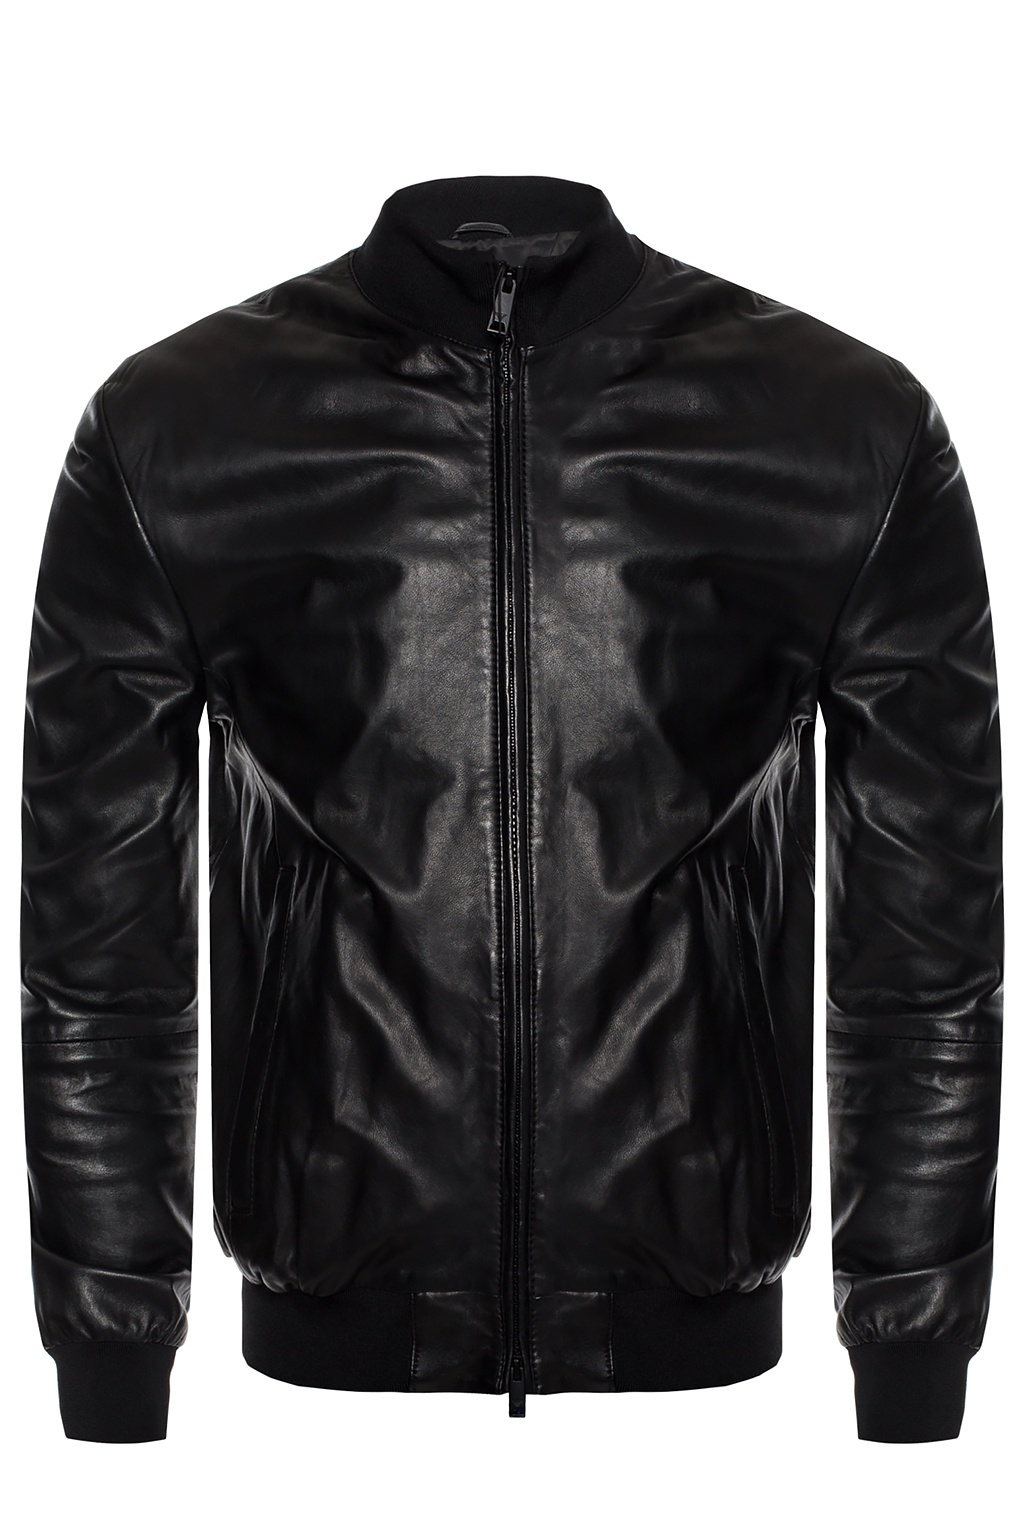 armani leather jacket